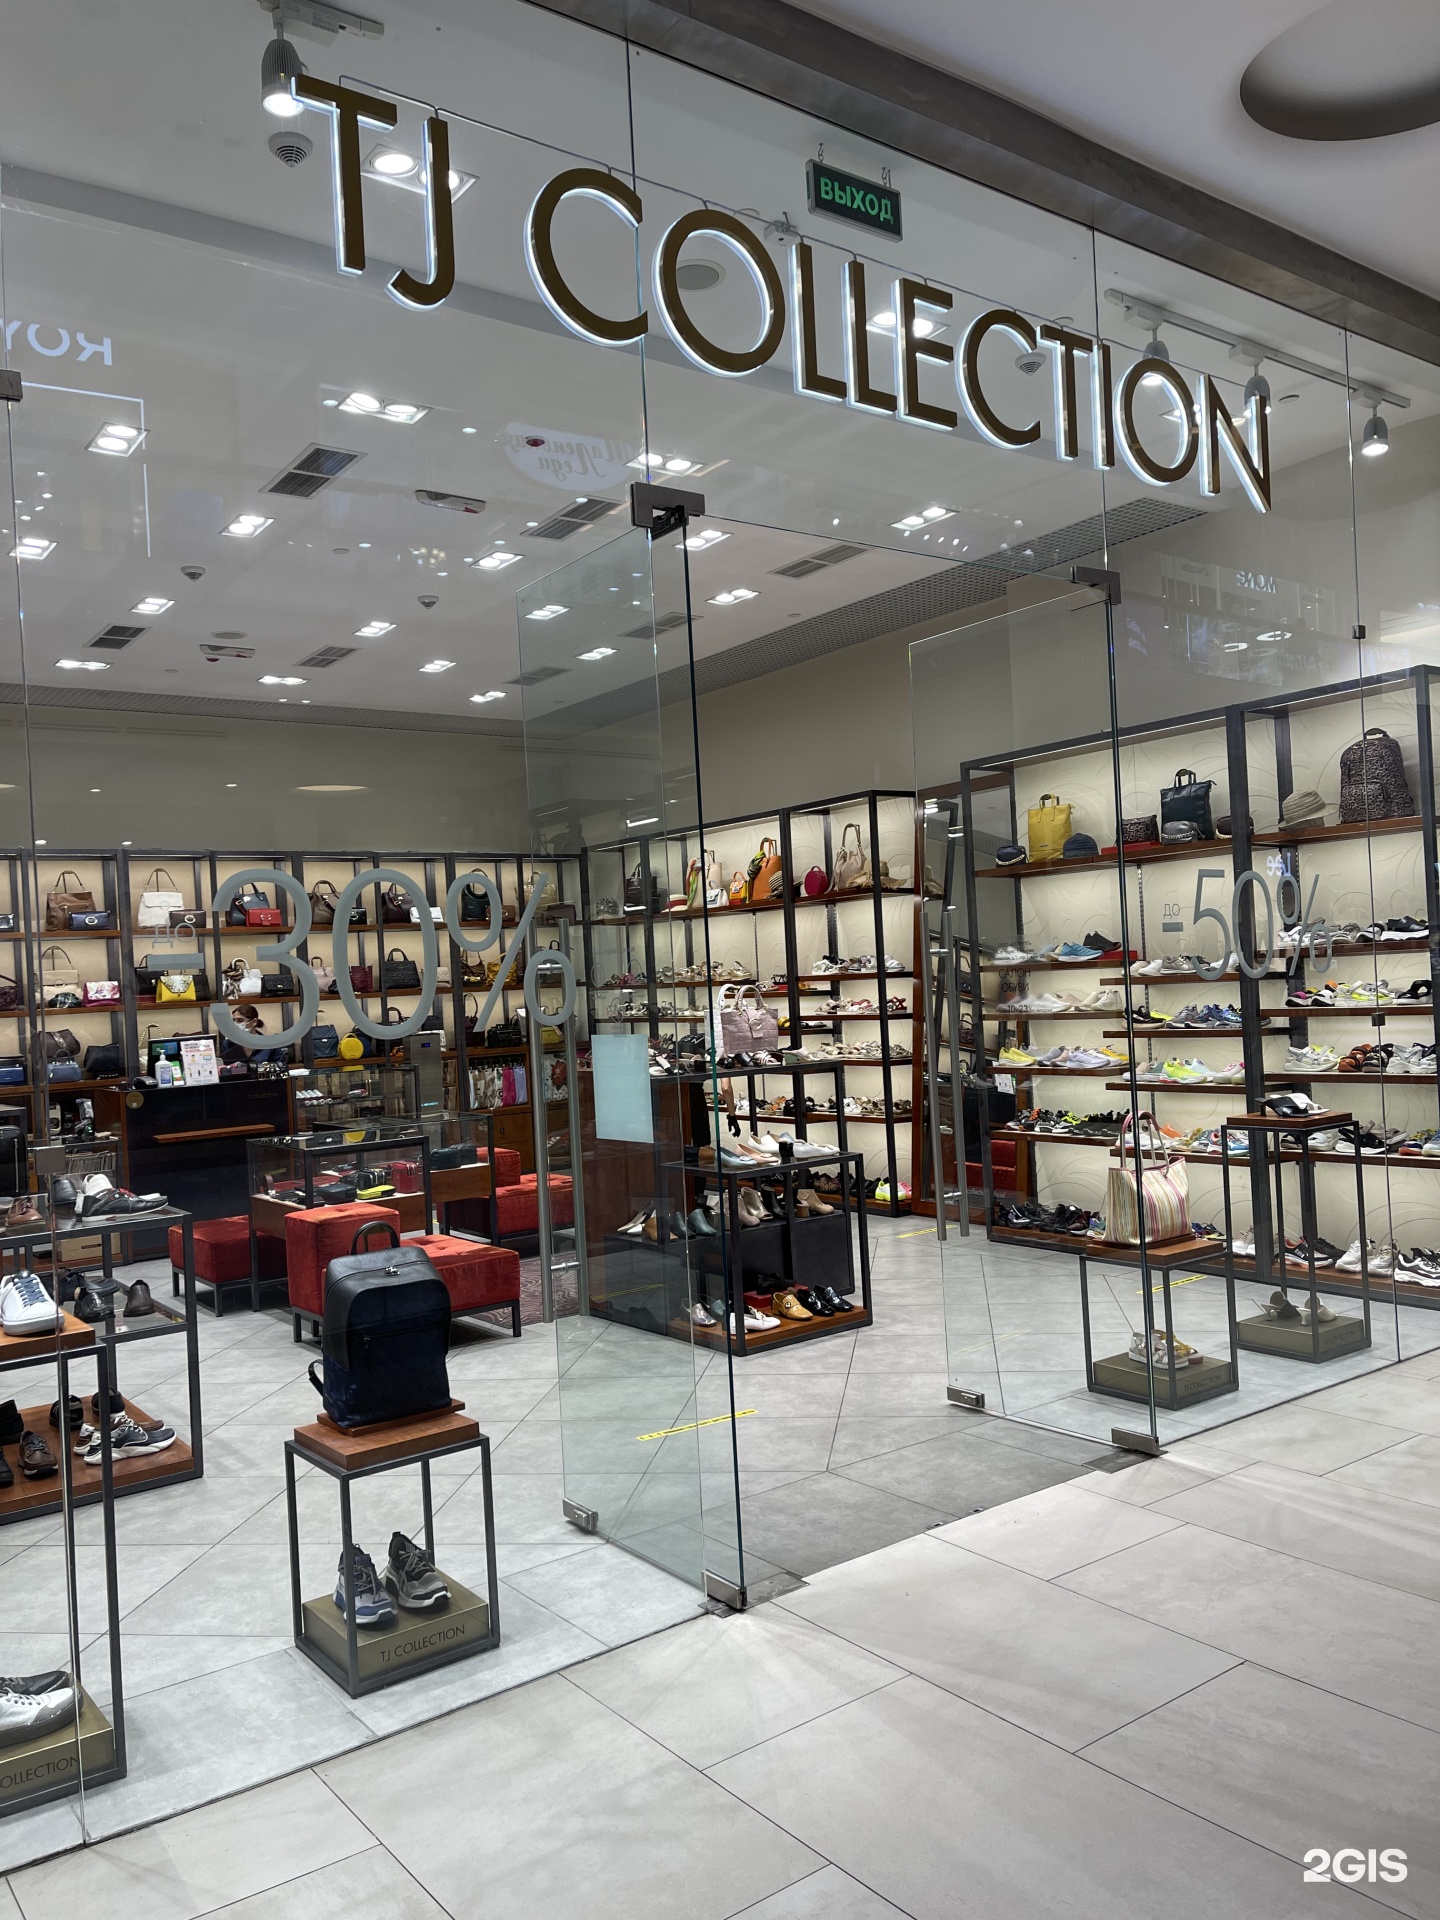 Tg Collection Интернет Магазин Обувь